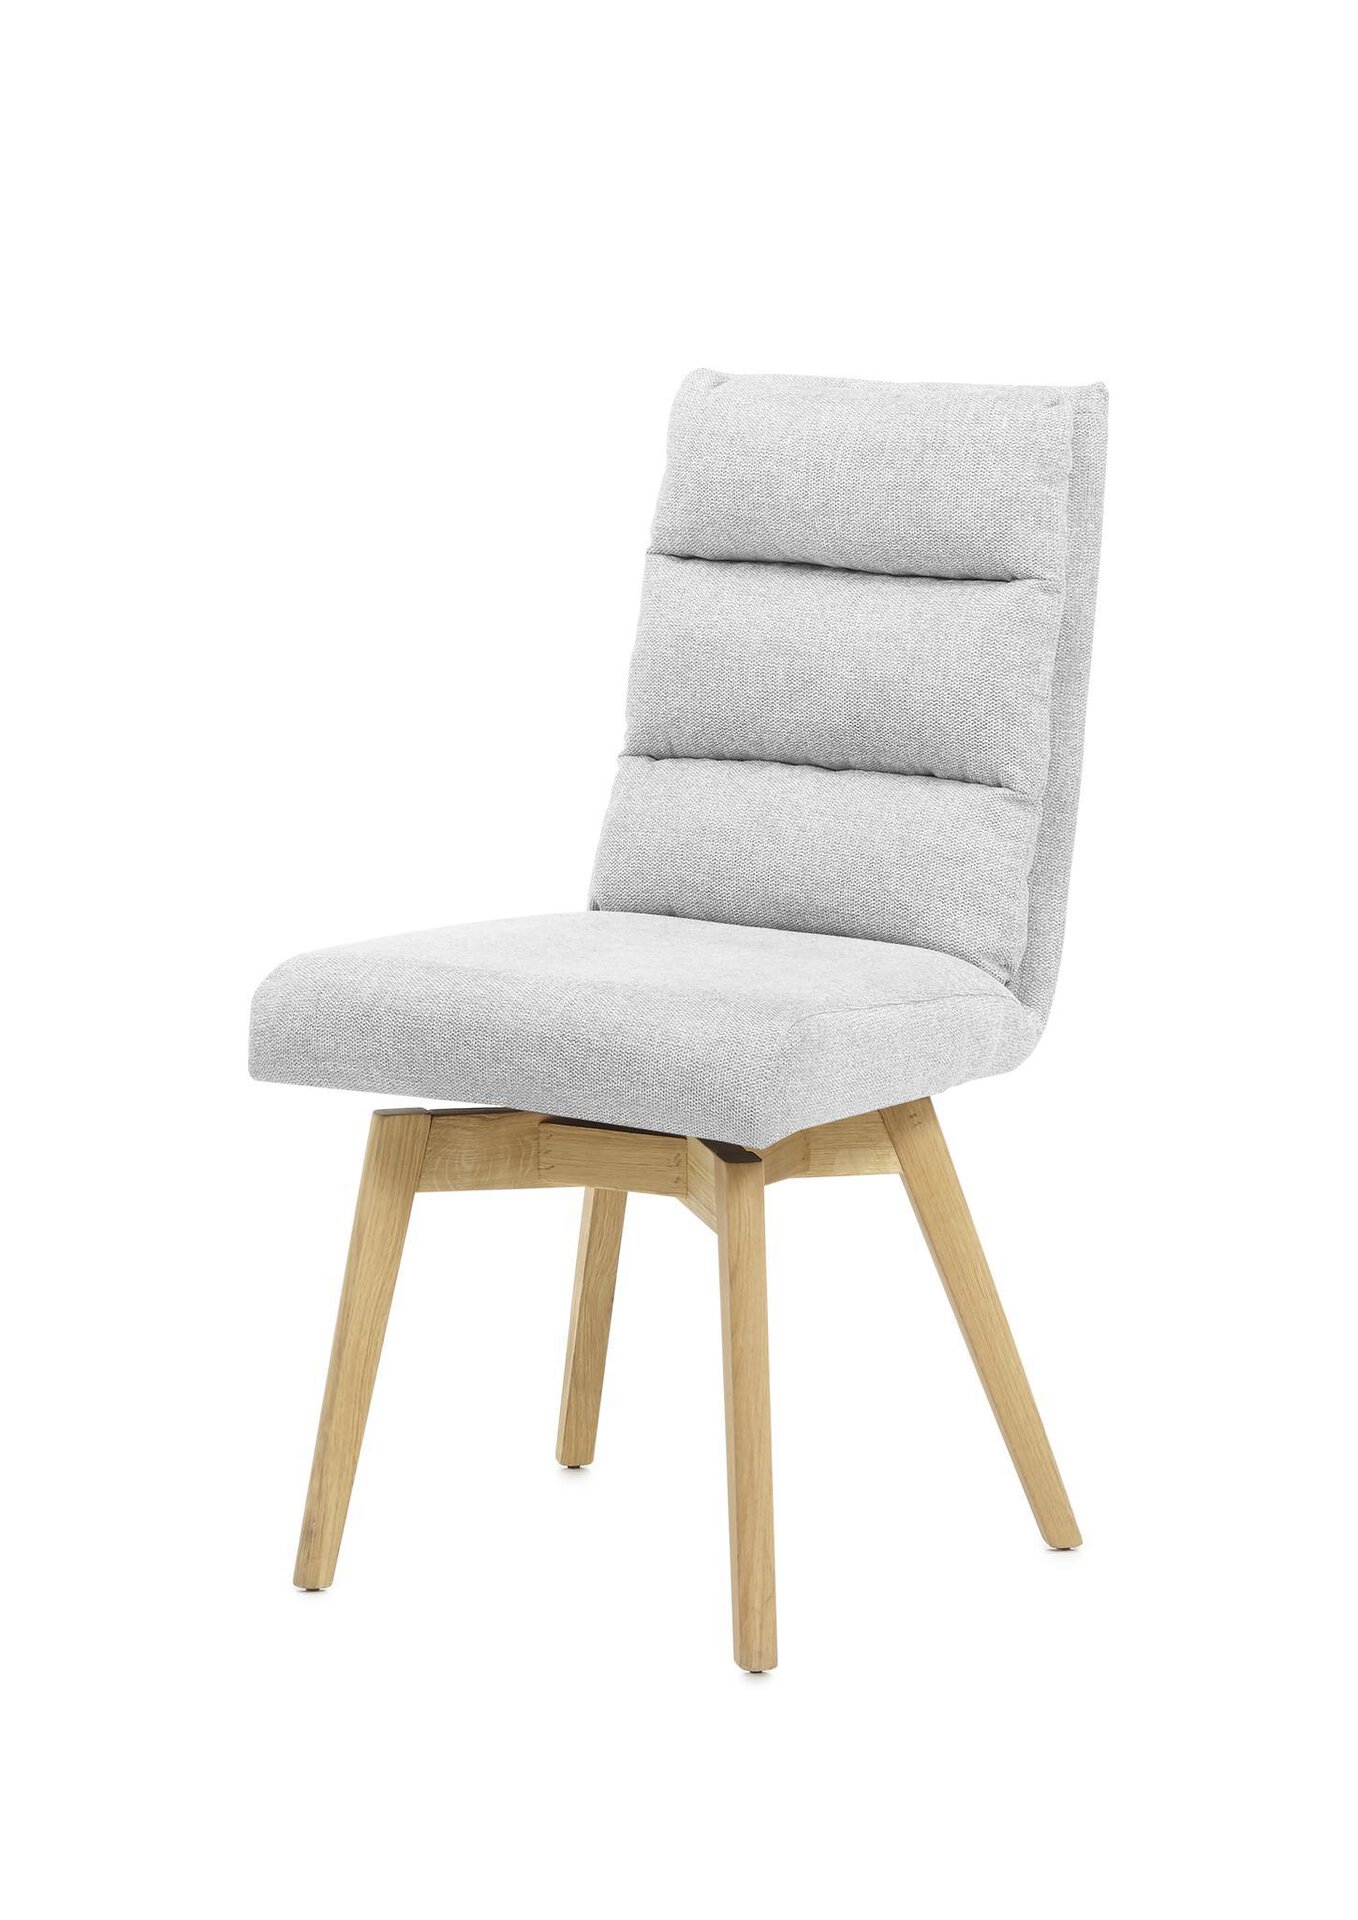 MCA Stuhl | Möbel Holz Inhofer furniture